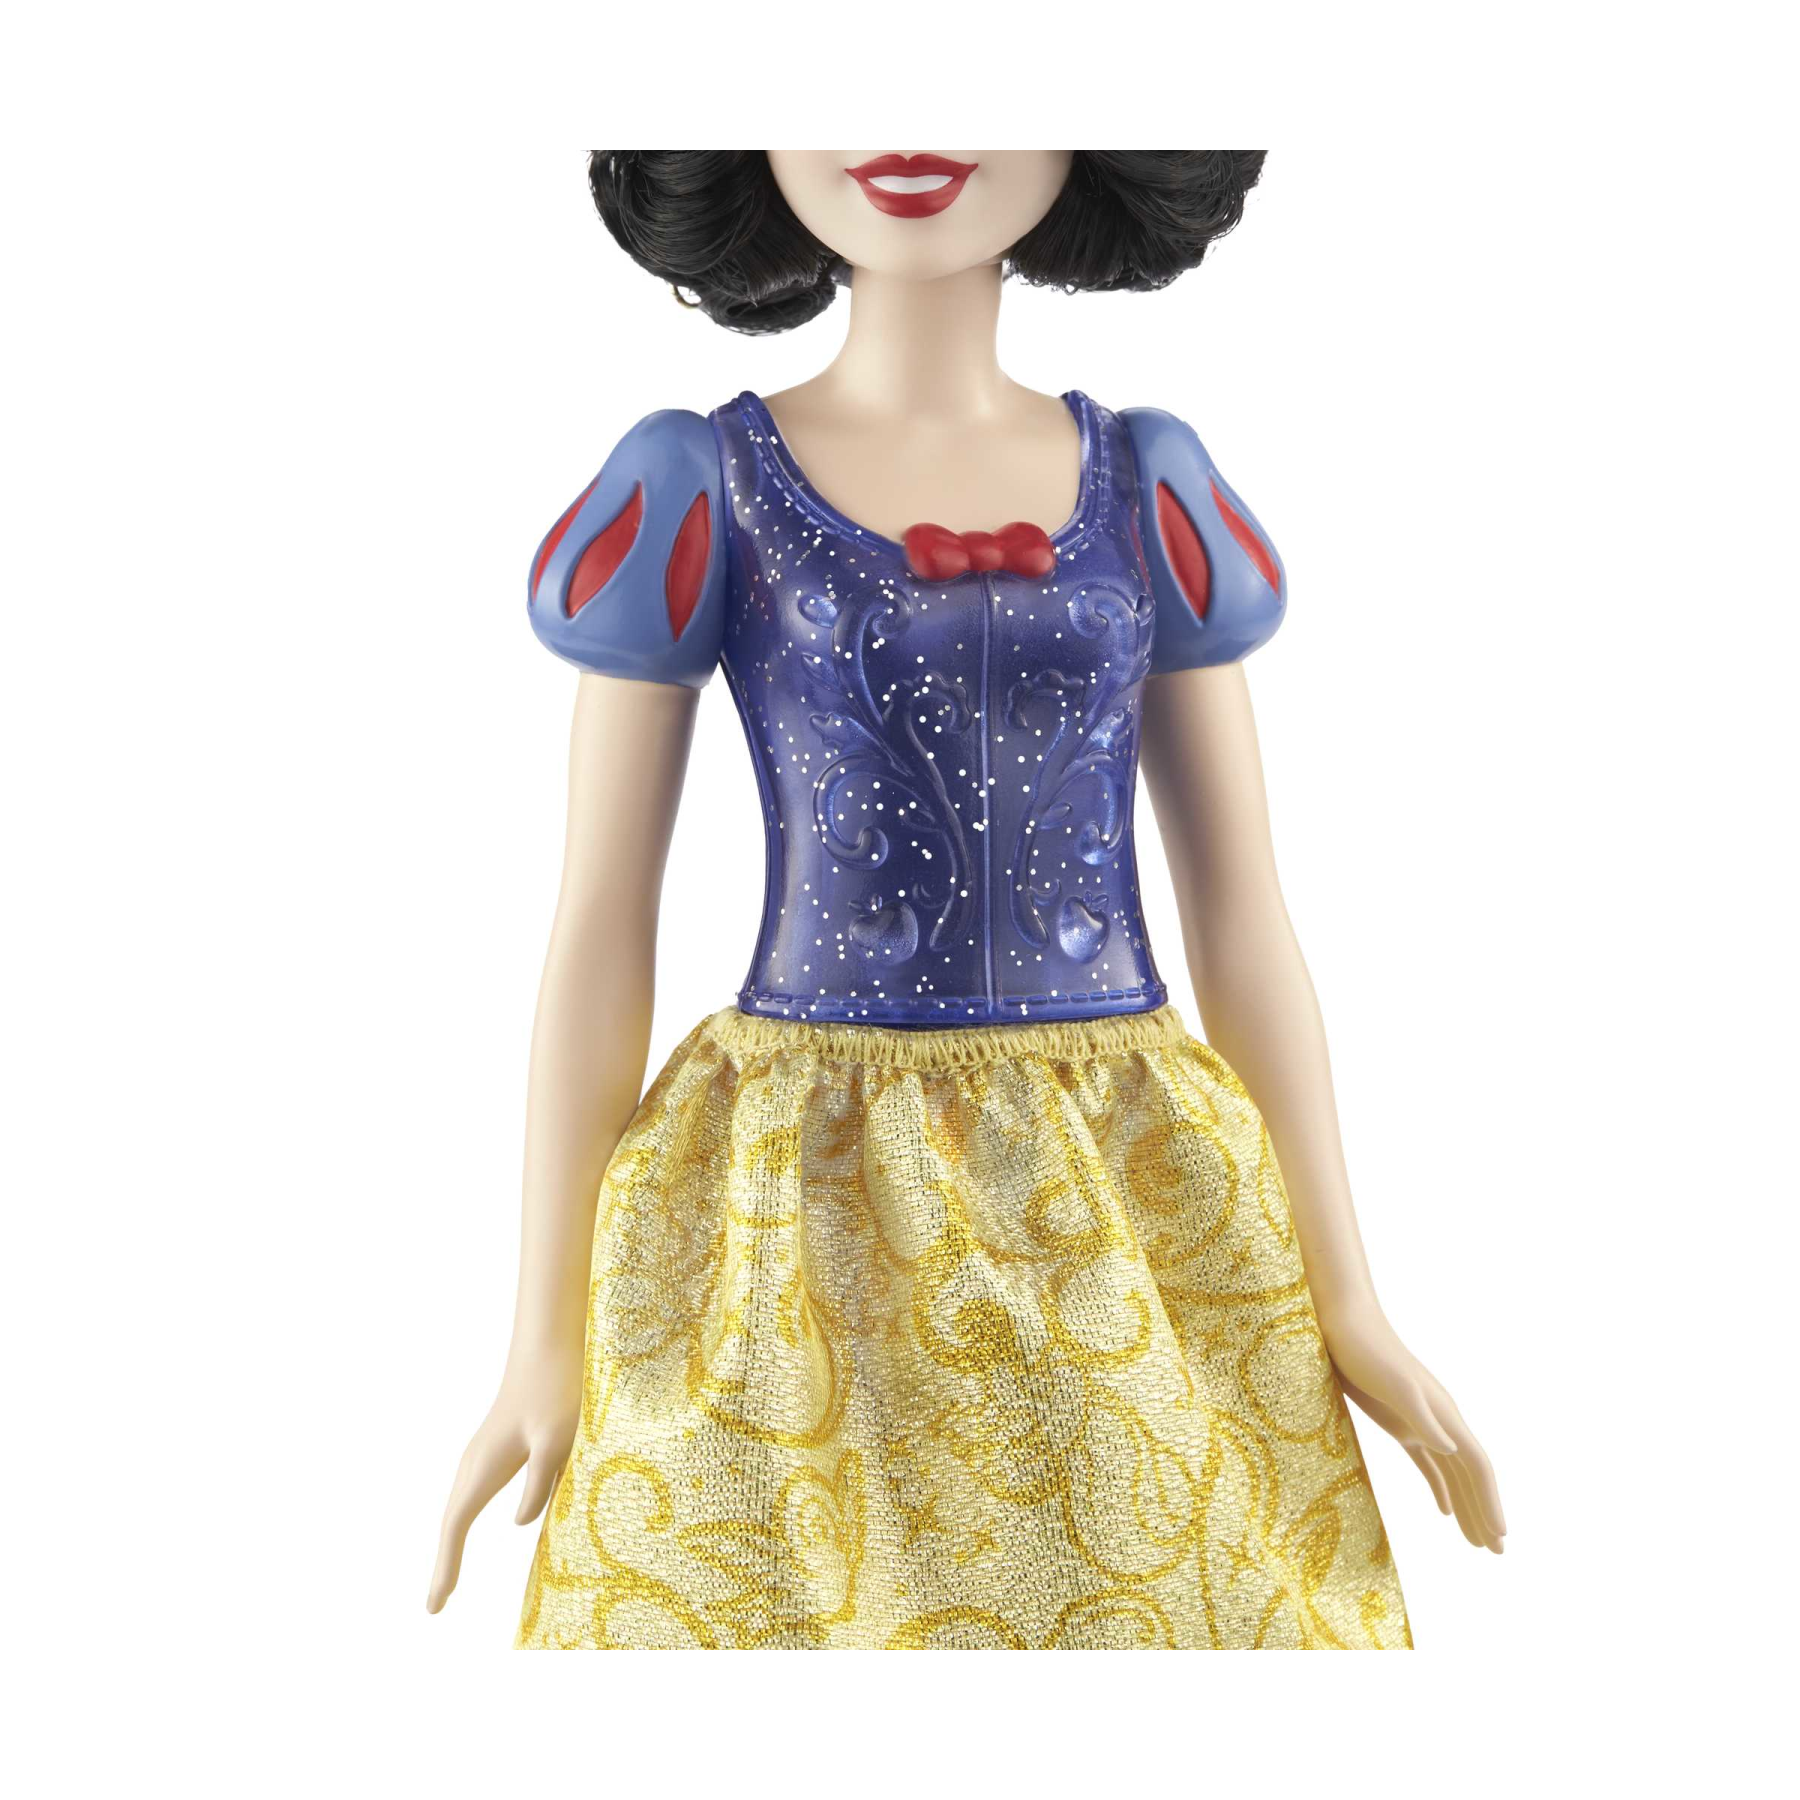 Disney princess - biancaneve bambola snodata, con capi e accessori scintillanti ispirati al film disney, giocattolo per bambini, 3+ anni, hlw08 - DISNEY PRINCESS